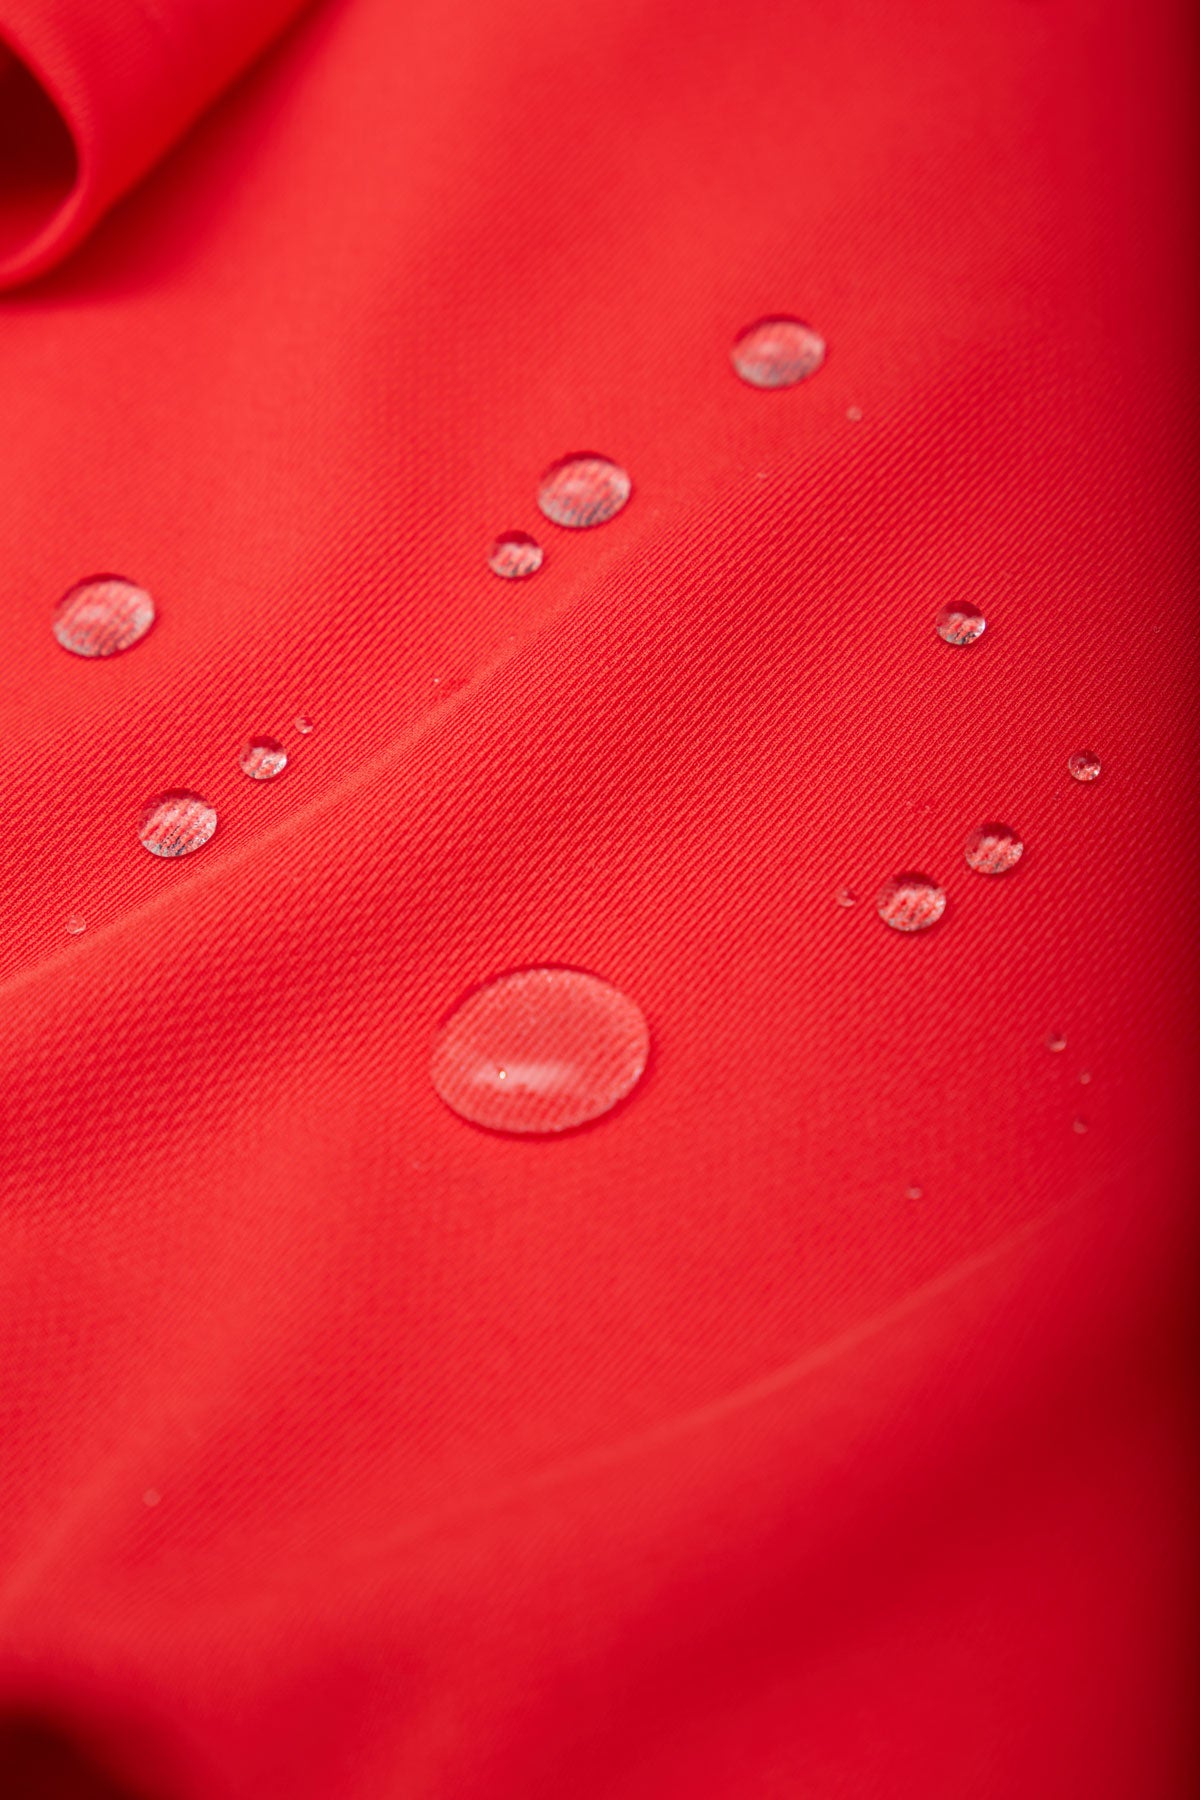 Camisa manga corta rojo cardio de Sepiia, fresca y elegante, perfecta para el verano. Foto gotas